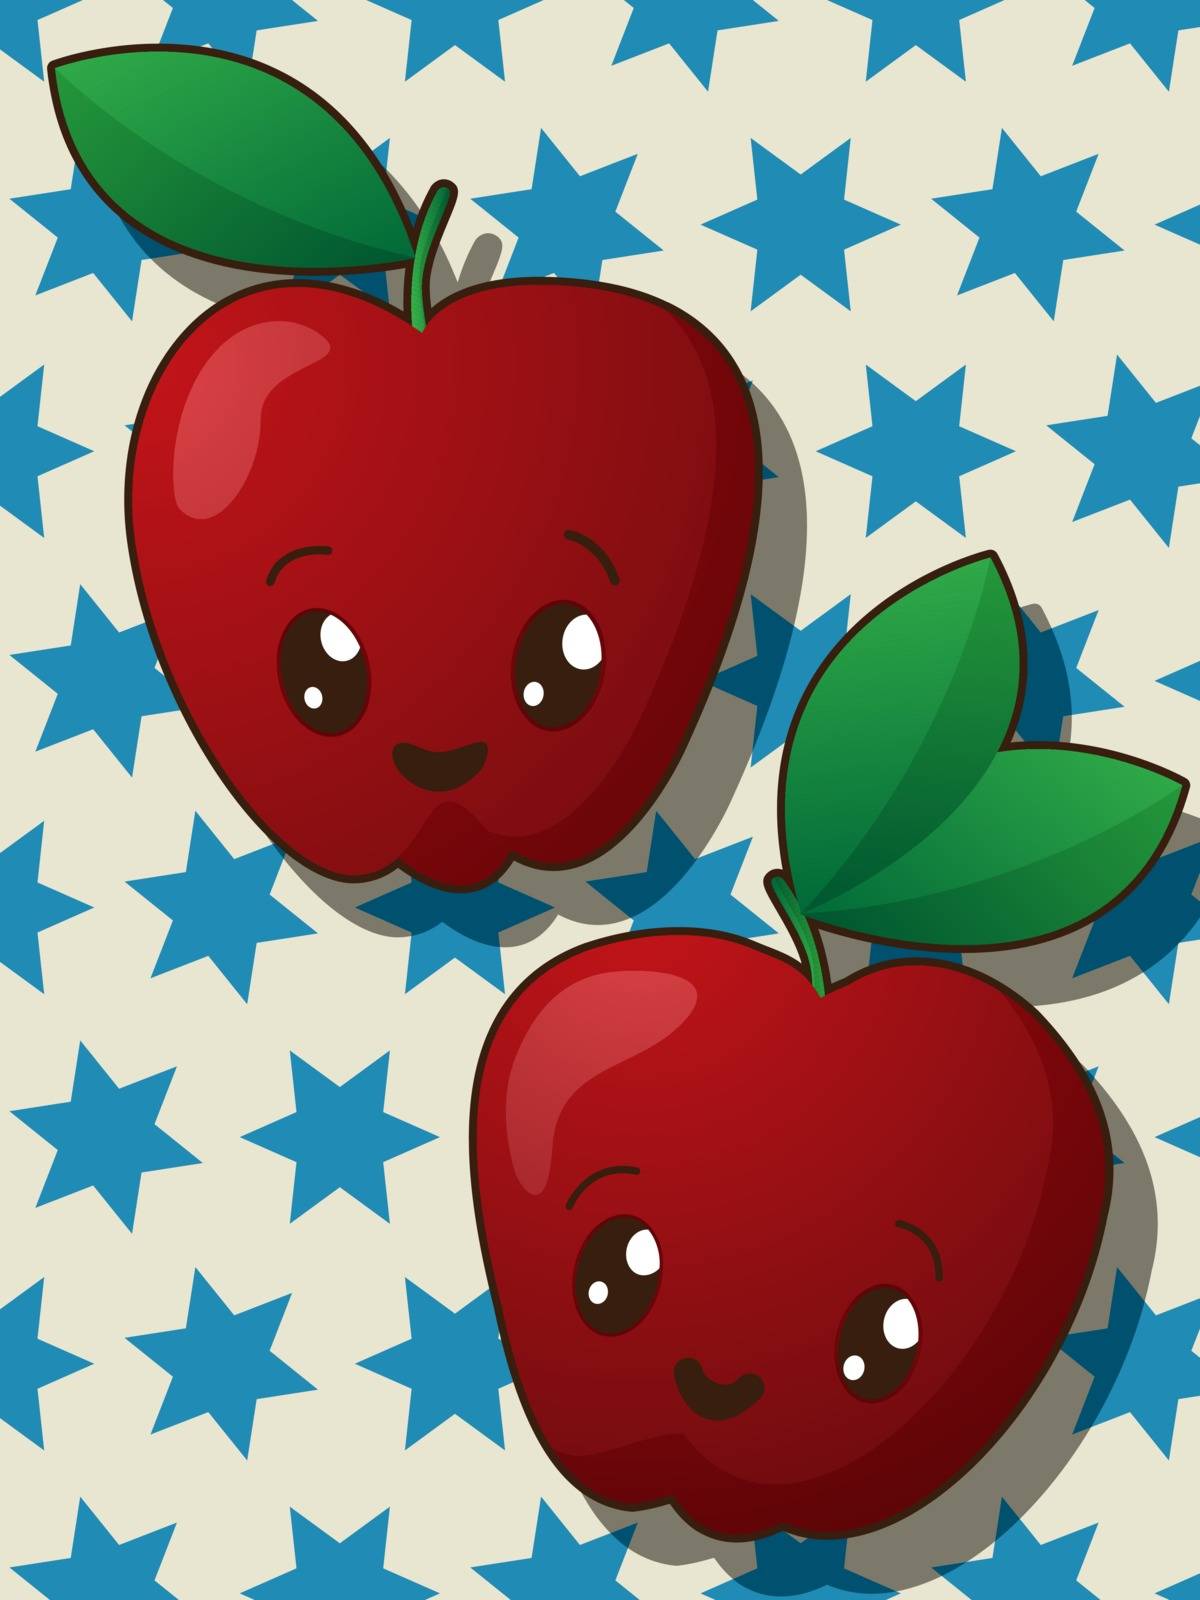 Kawaii apple icons by Lirch